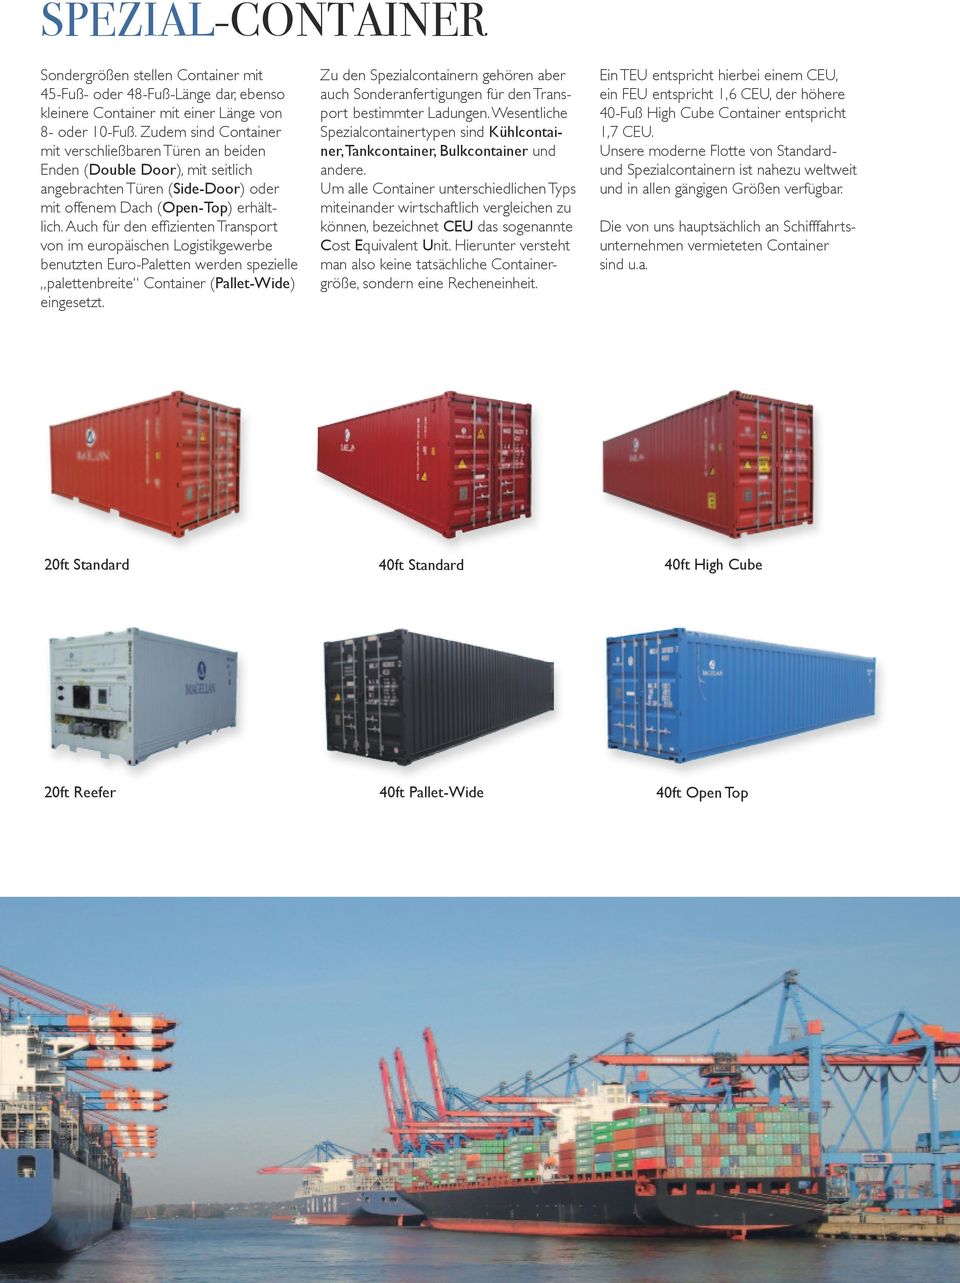 Auch für den effizienten Transport von im europäischen Logistikgewerbe benutzten Euro-Paletten werden spezielle palettenbreite Container (Pallet-Wide) eingesetzt.